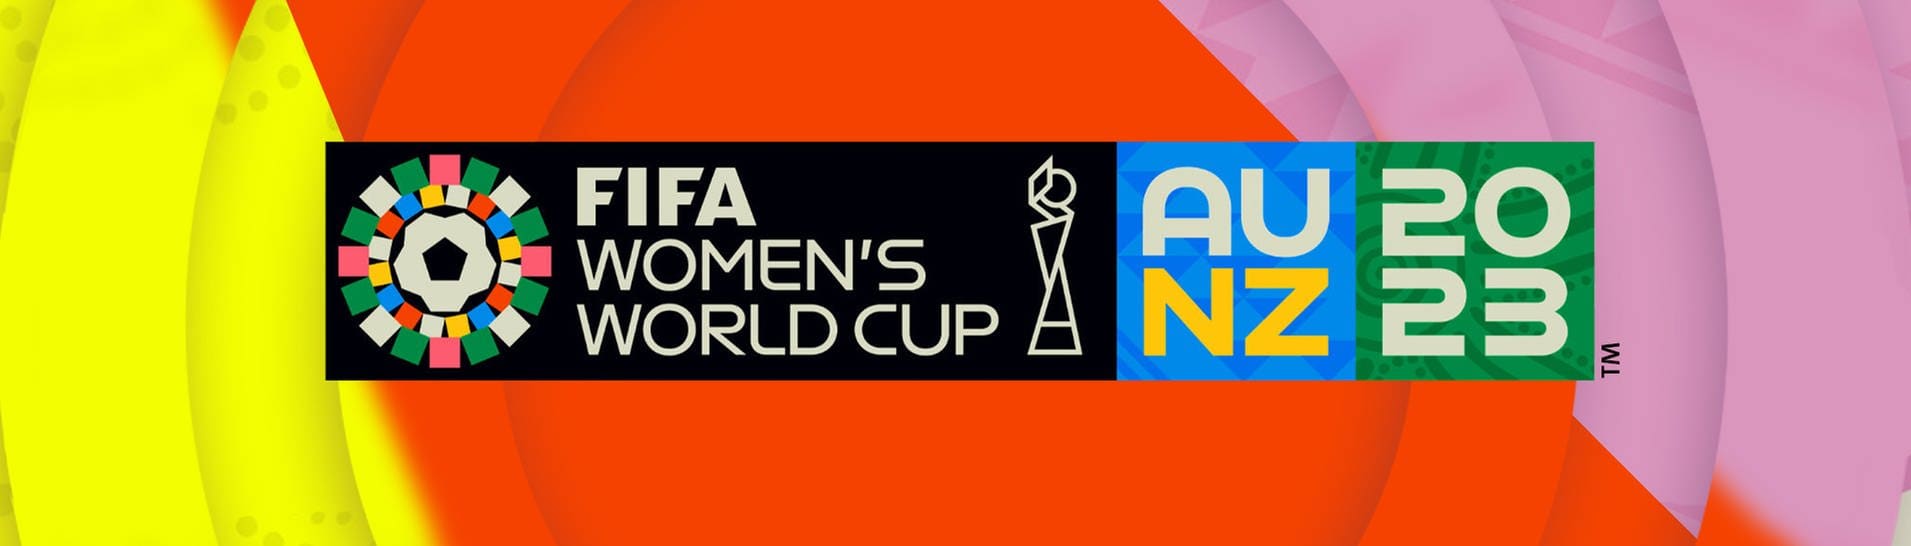 Das Logo zur FIFA Frauen WM 2023 in Australien und Neuseeland